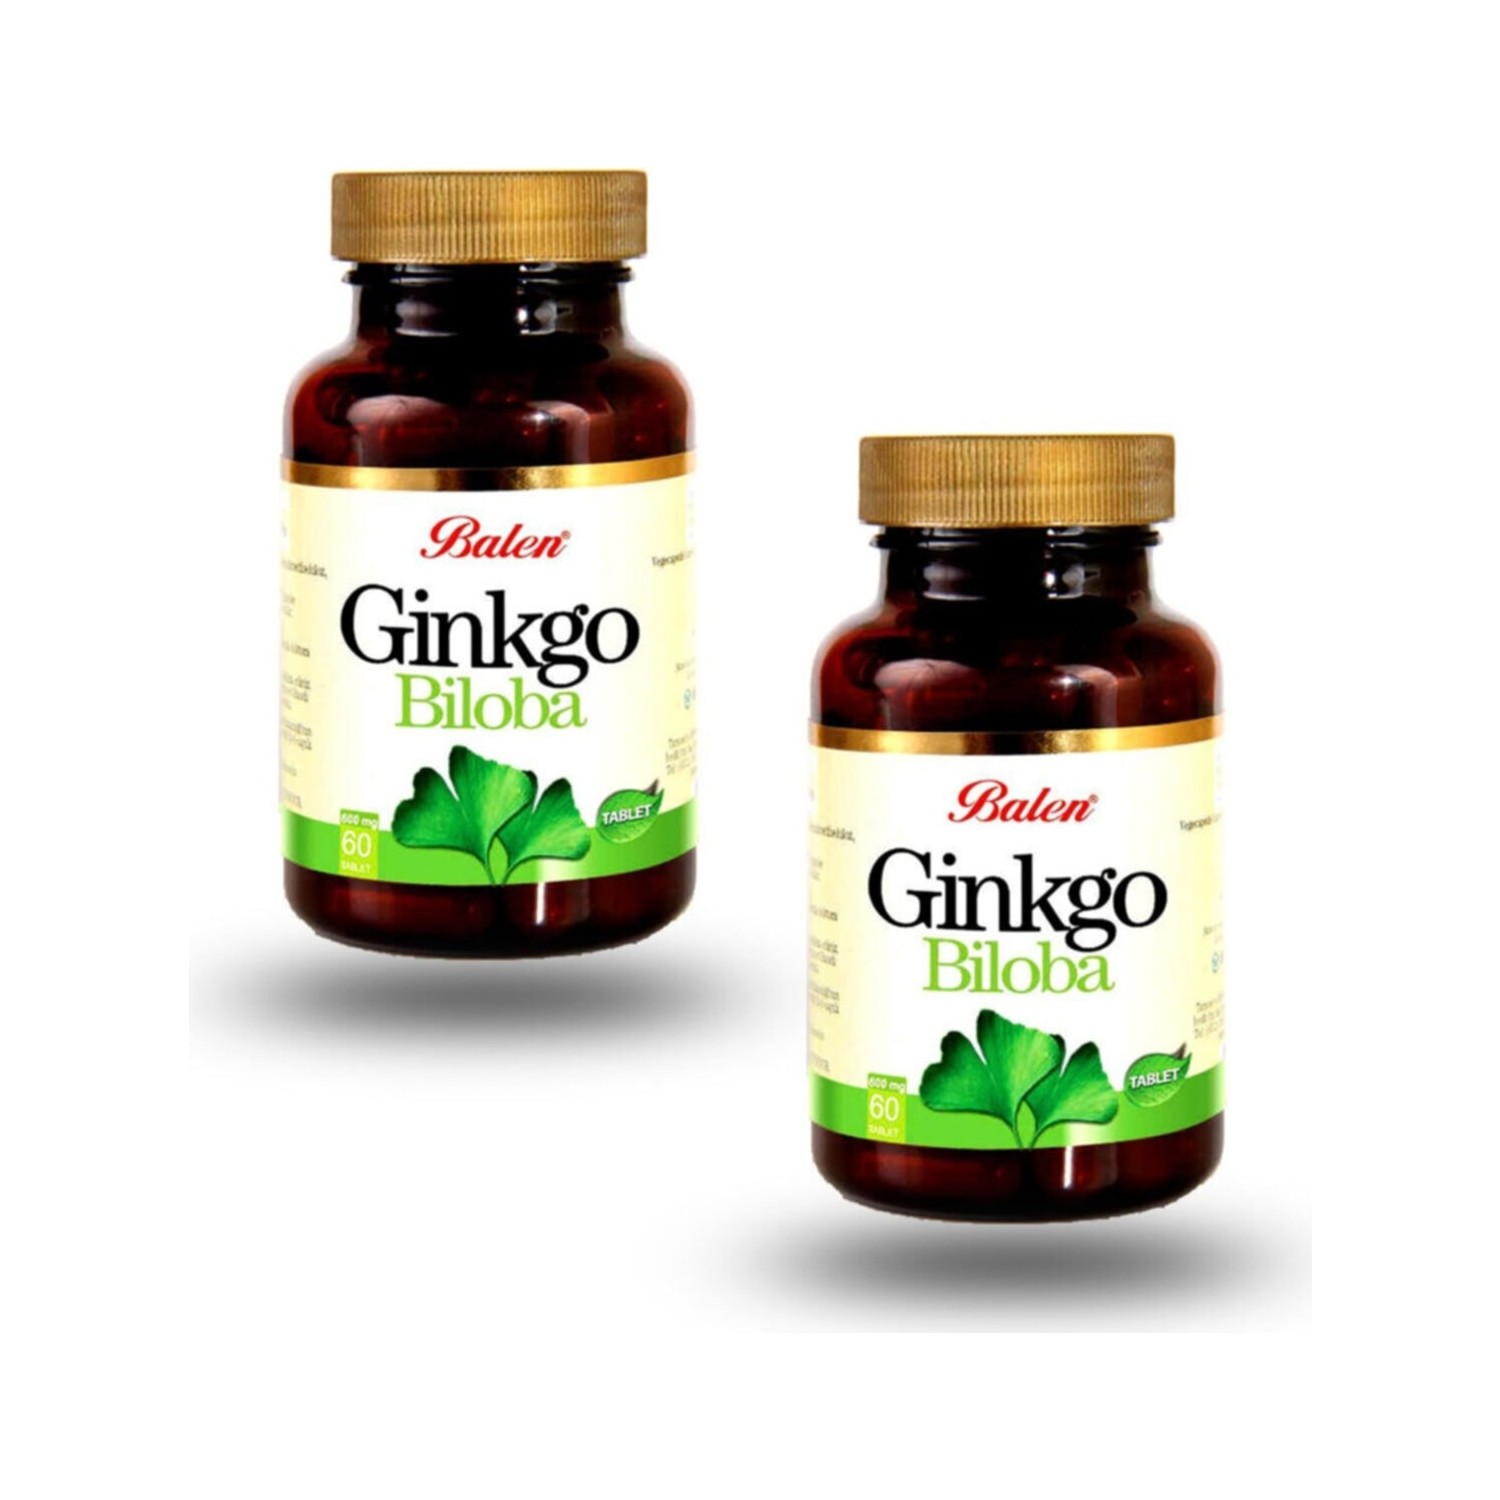 Активная добавка Balen Ginkgo Biloba, 60 капсул, 2 штуки красный женьшень balen ginkgo biloba 120 капсул 720 мг 2 штуки